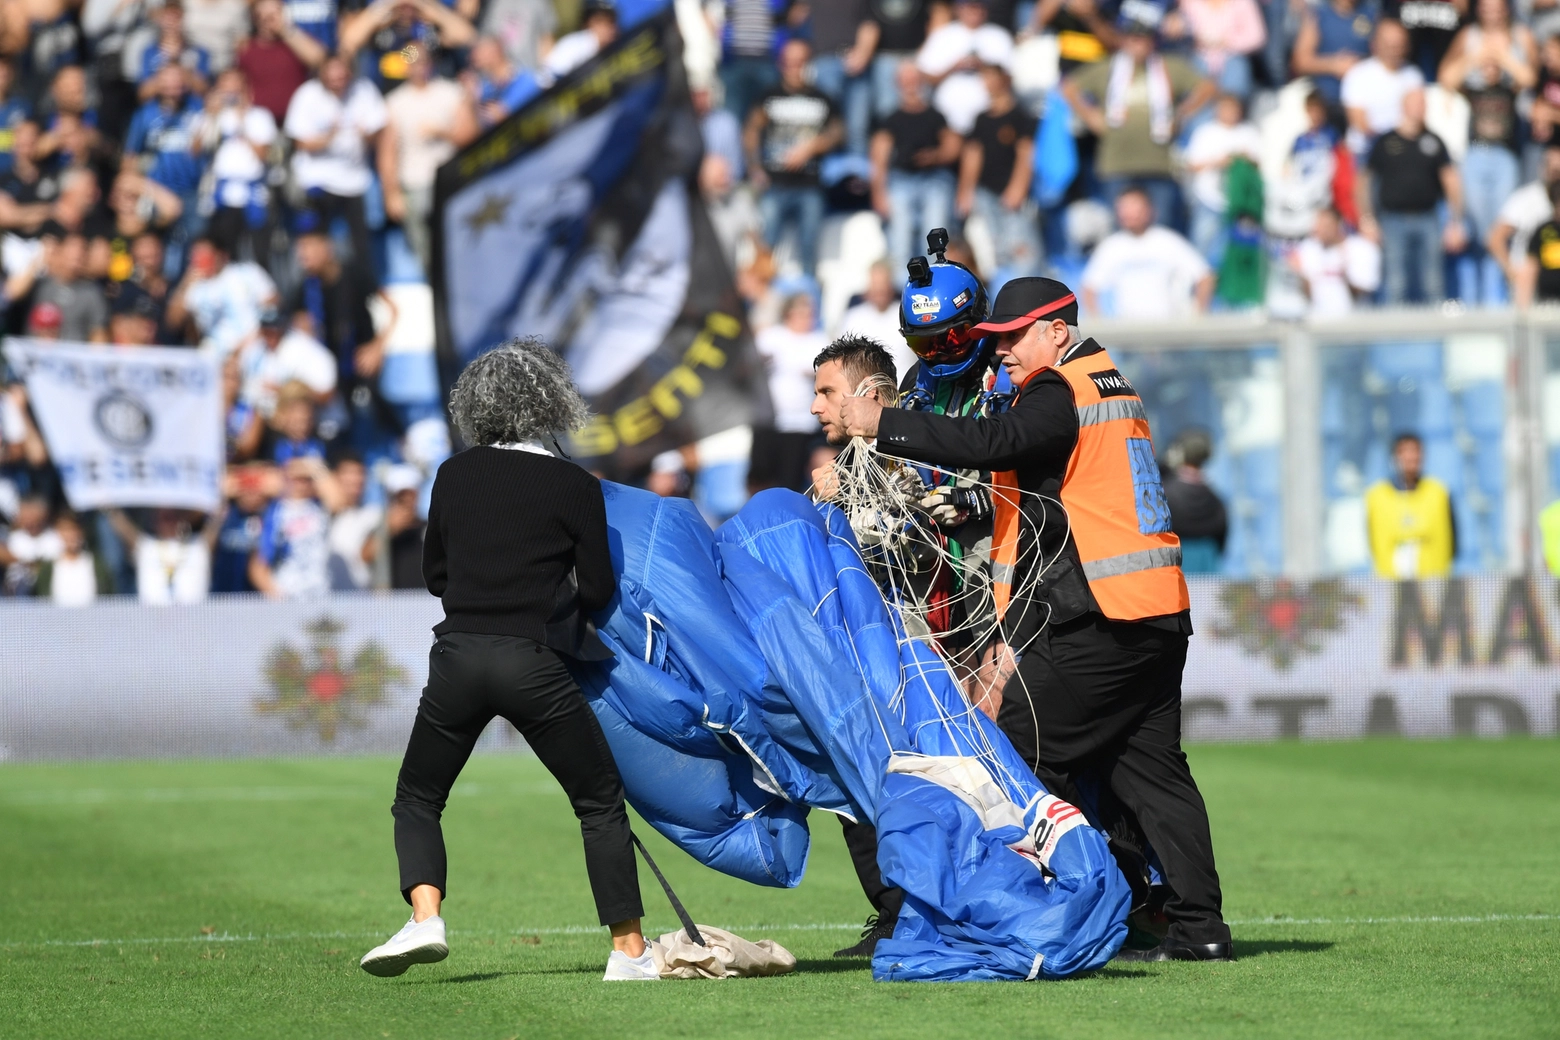 Il paracadutista che è atterrato in campo durante il match (foto Fiocchi)